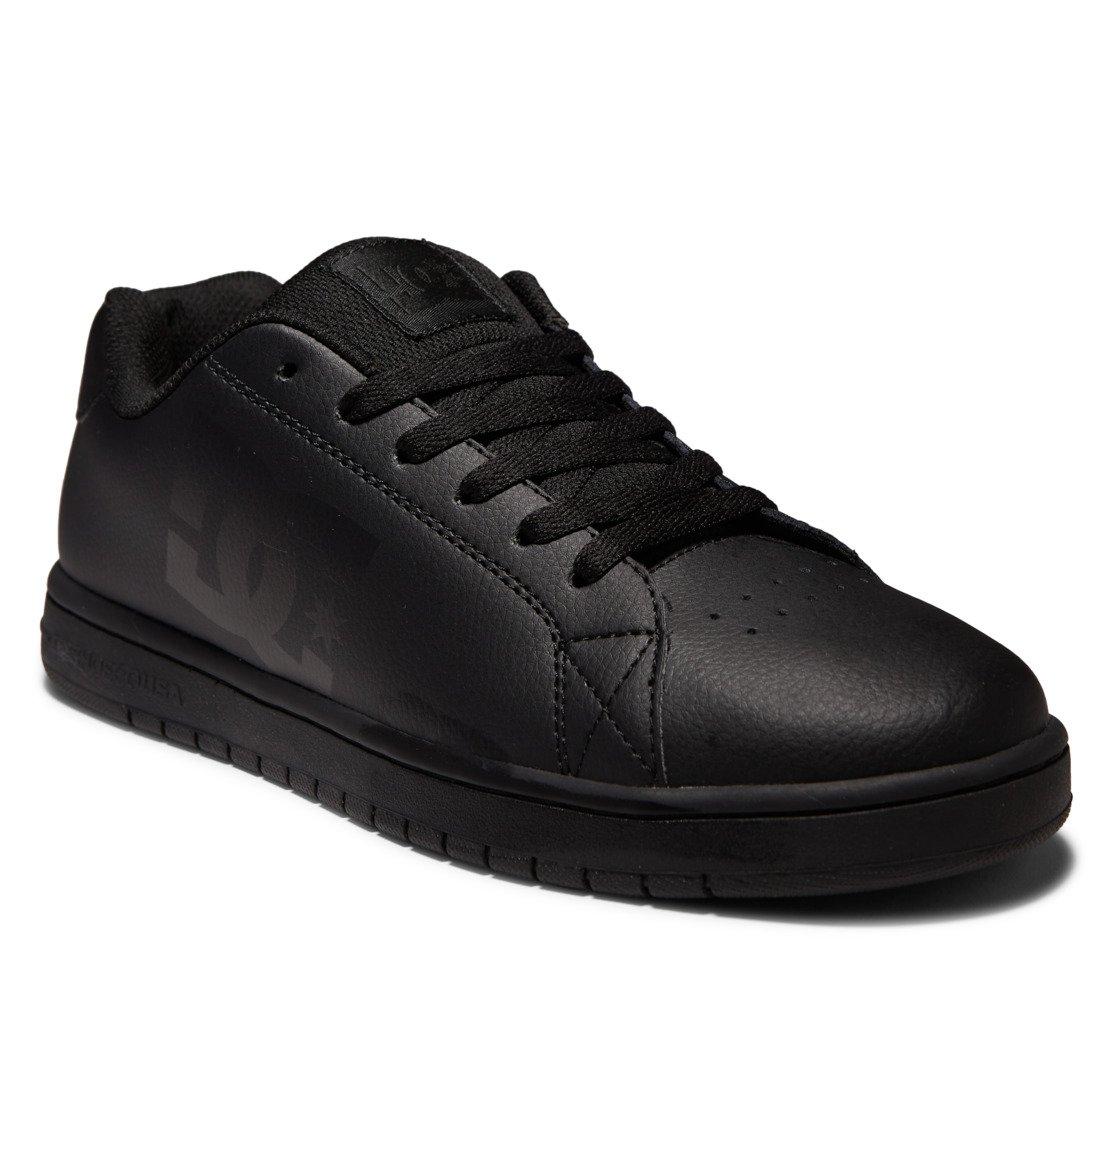 Кросівки DC Men's Gaveler Shoes, чоловічі, розмір 42 1/2 євро, чорні шкіряні